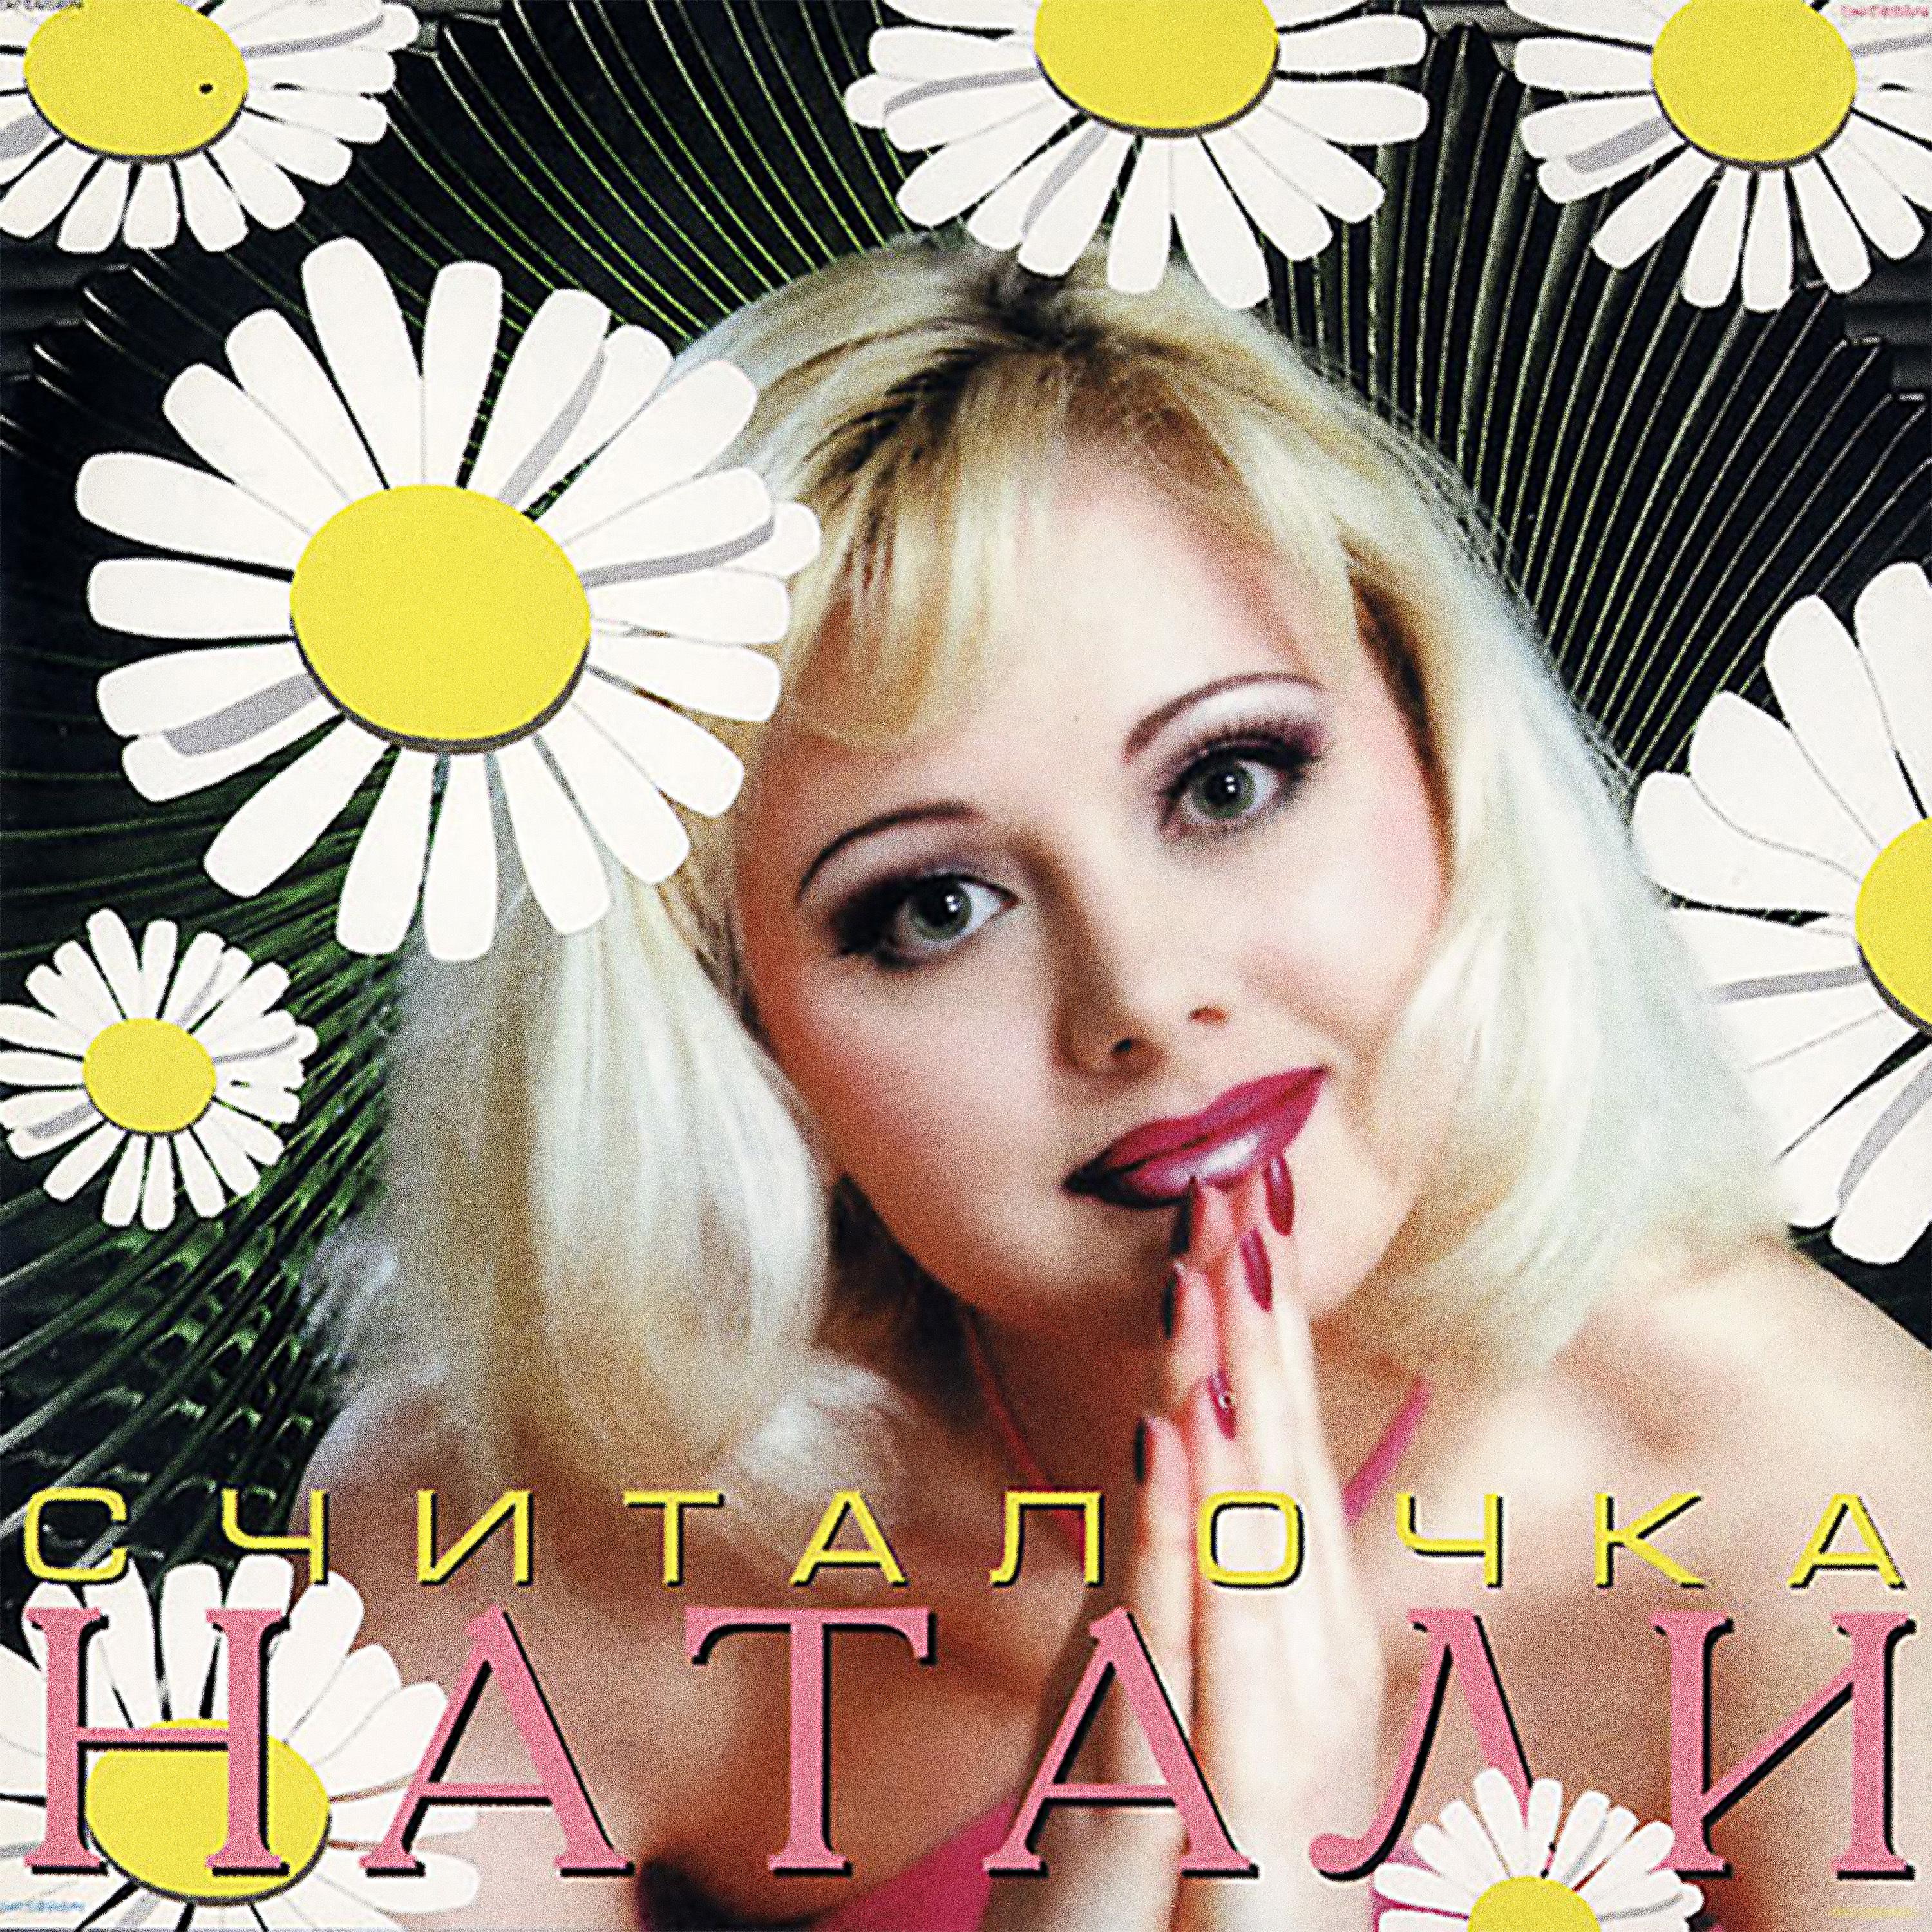 Натали певица. Натали считалочка 1999 альбом. Натали певица 90. Диск певица Натали.